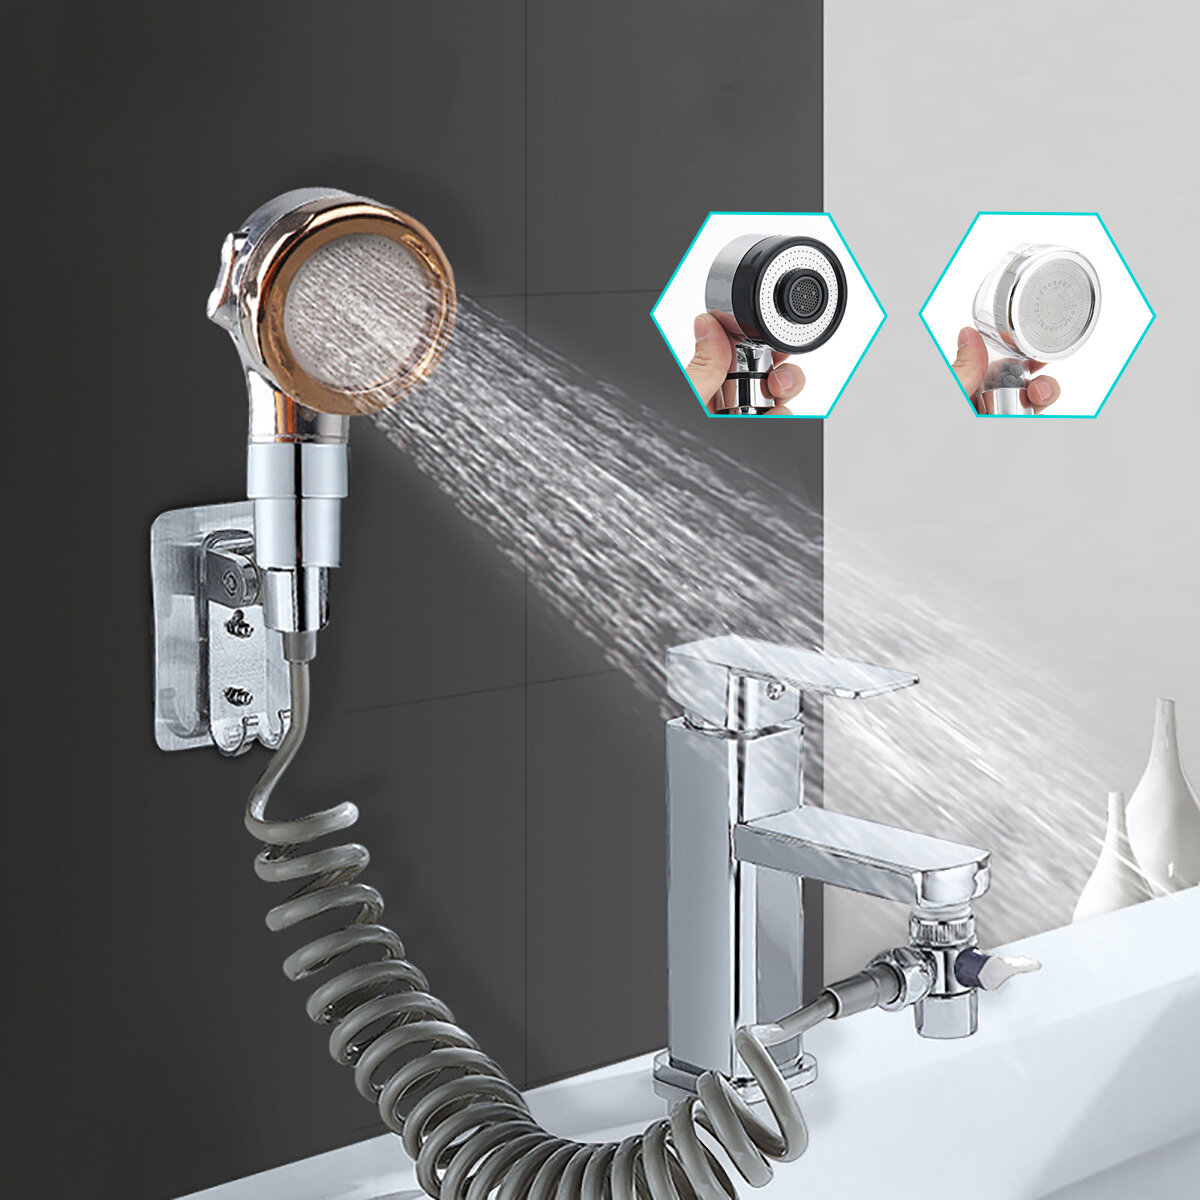 Bathroom Wash Face Basin Water Tap External Shower Head HandHeld Bidet Sprayer Wash Jet Diverter Kit Set